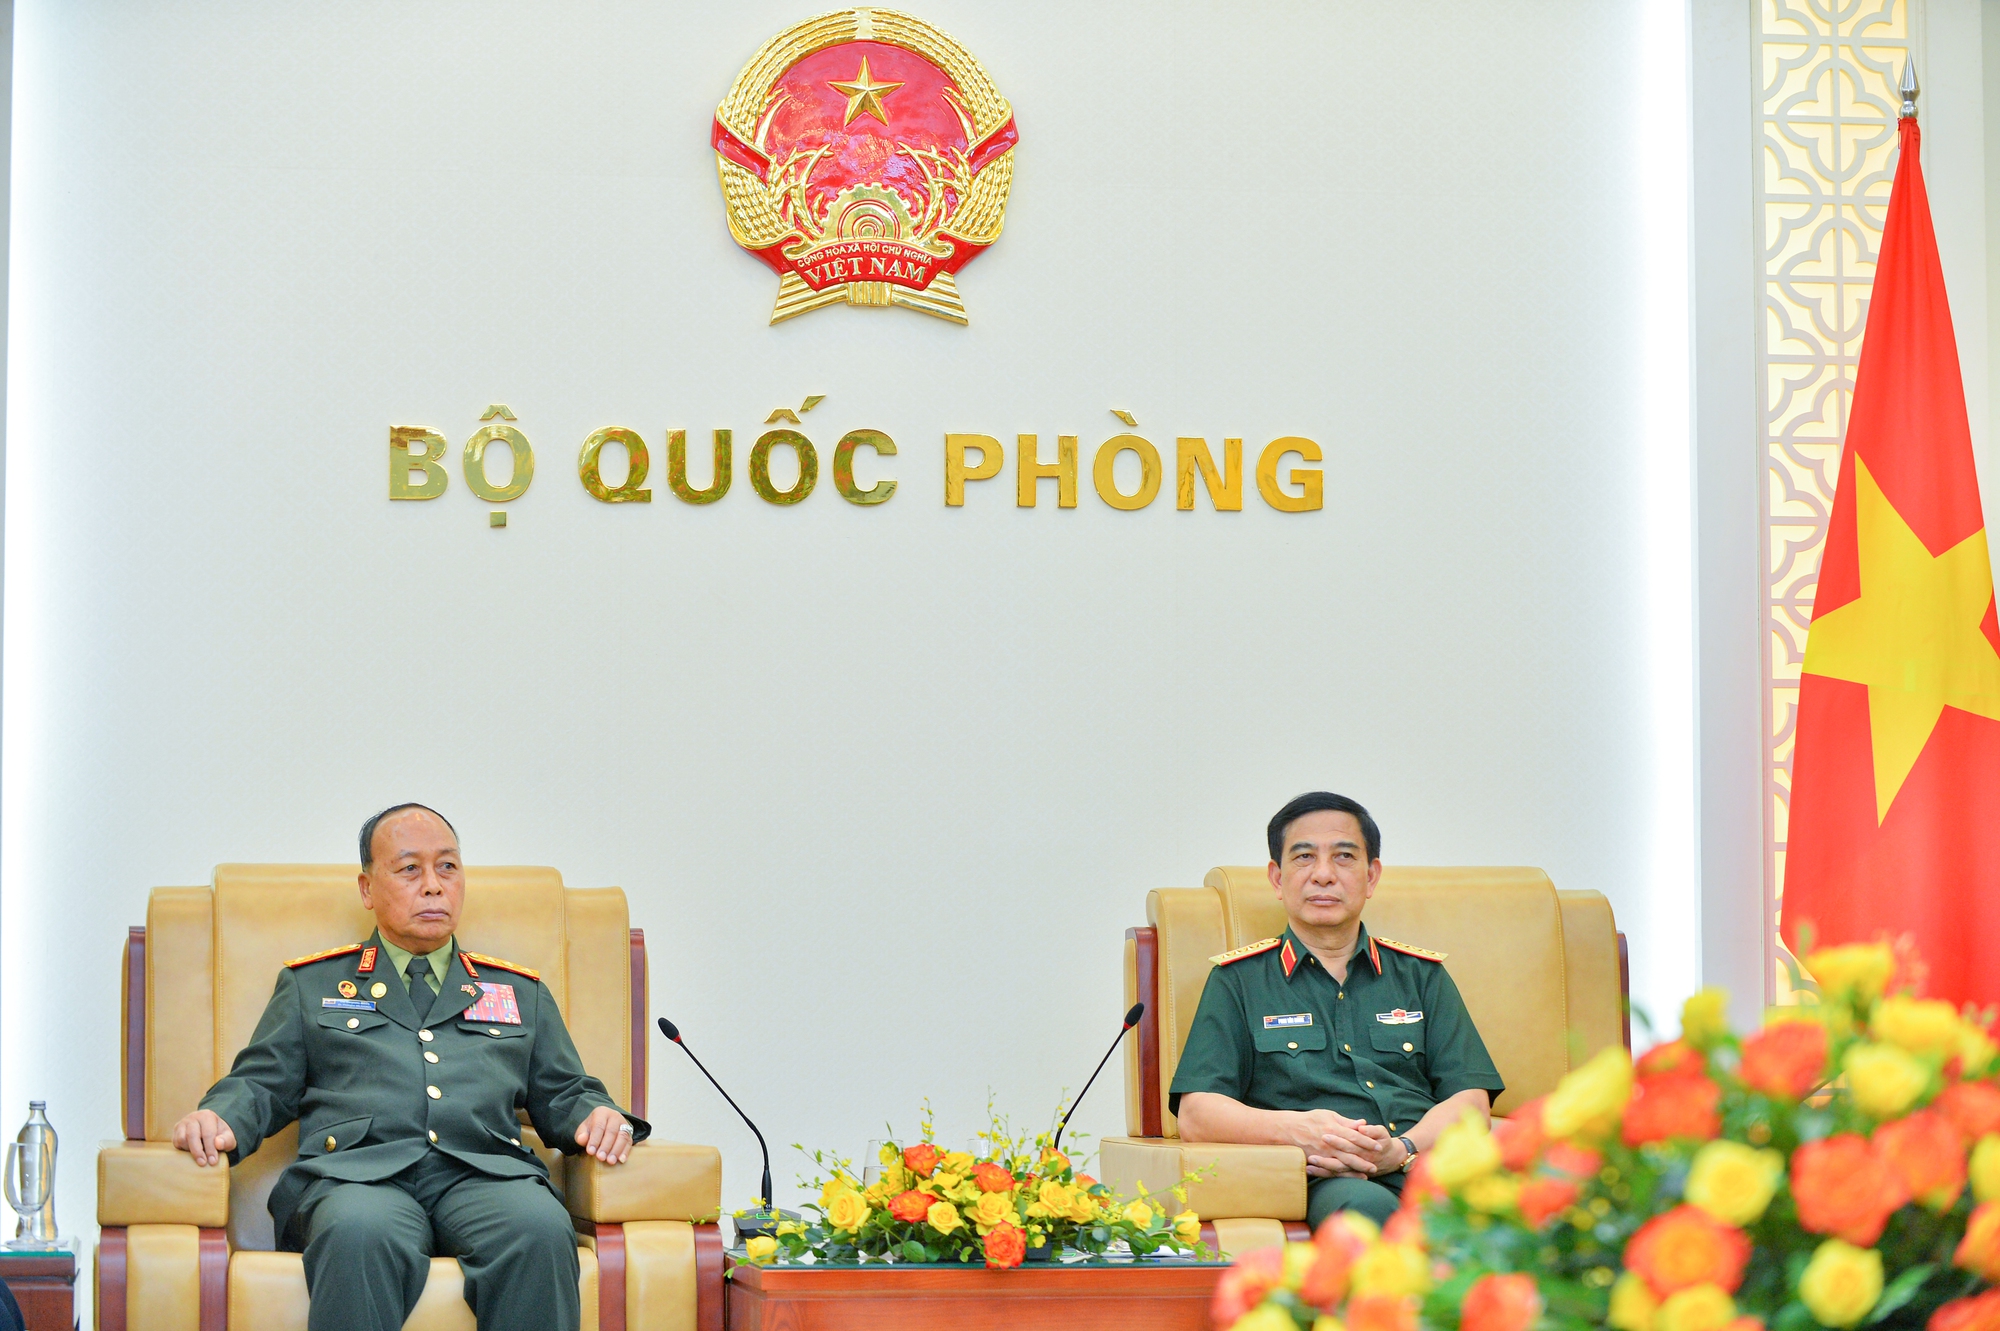 'Bộ Quốc phòng luôn ủng hộ quân đội Việt Nam - Lào phát triển bền chặt' - Ảnh 3.